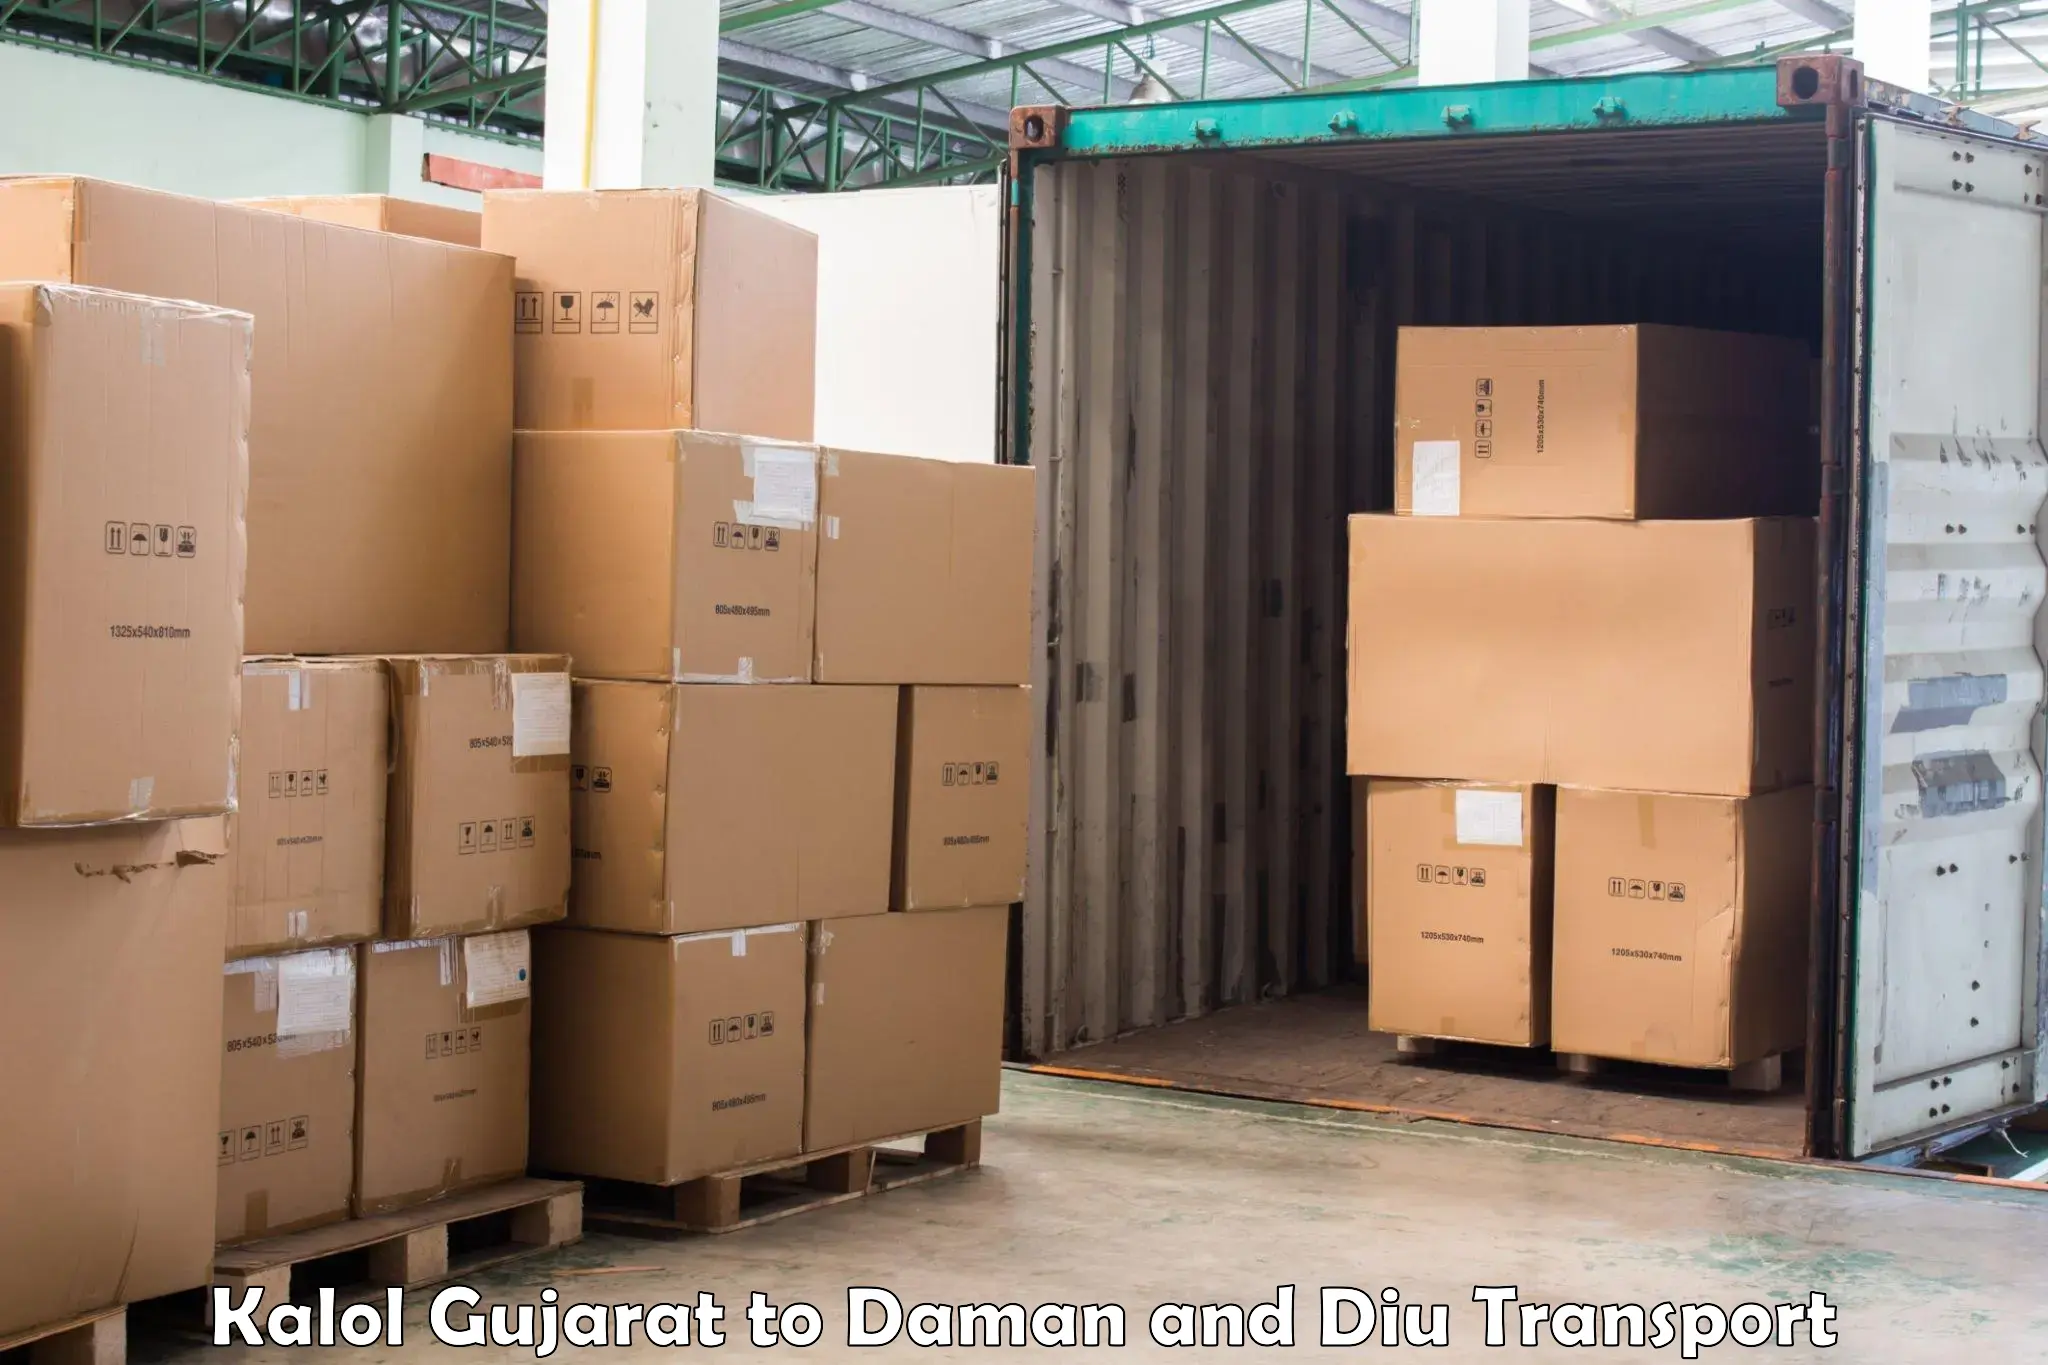 Luggage transport services Kalol Gujarat to Diu